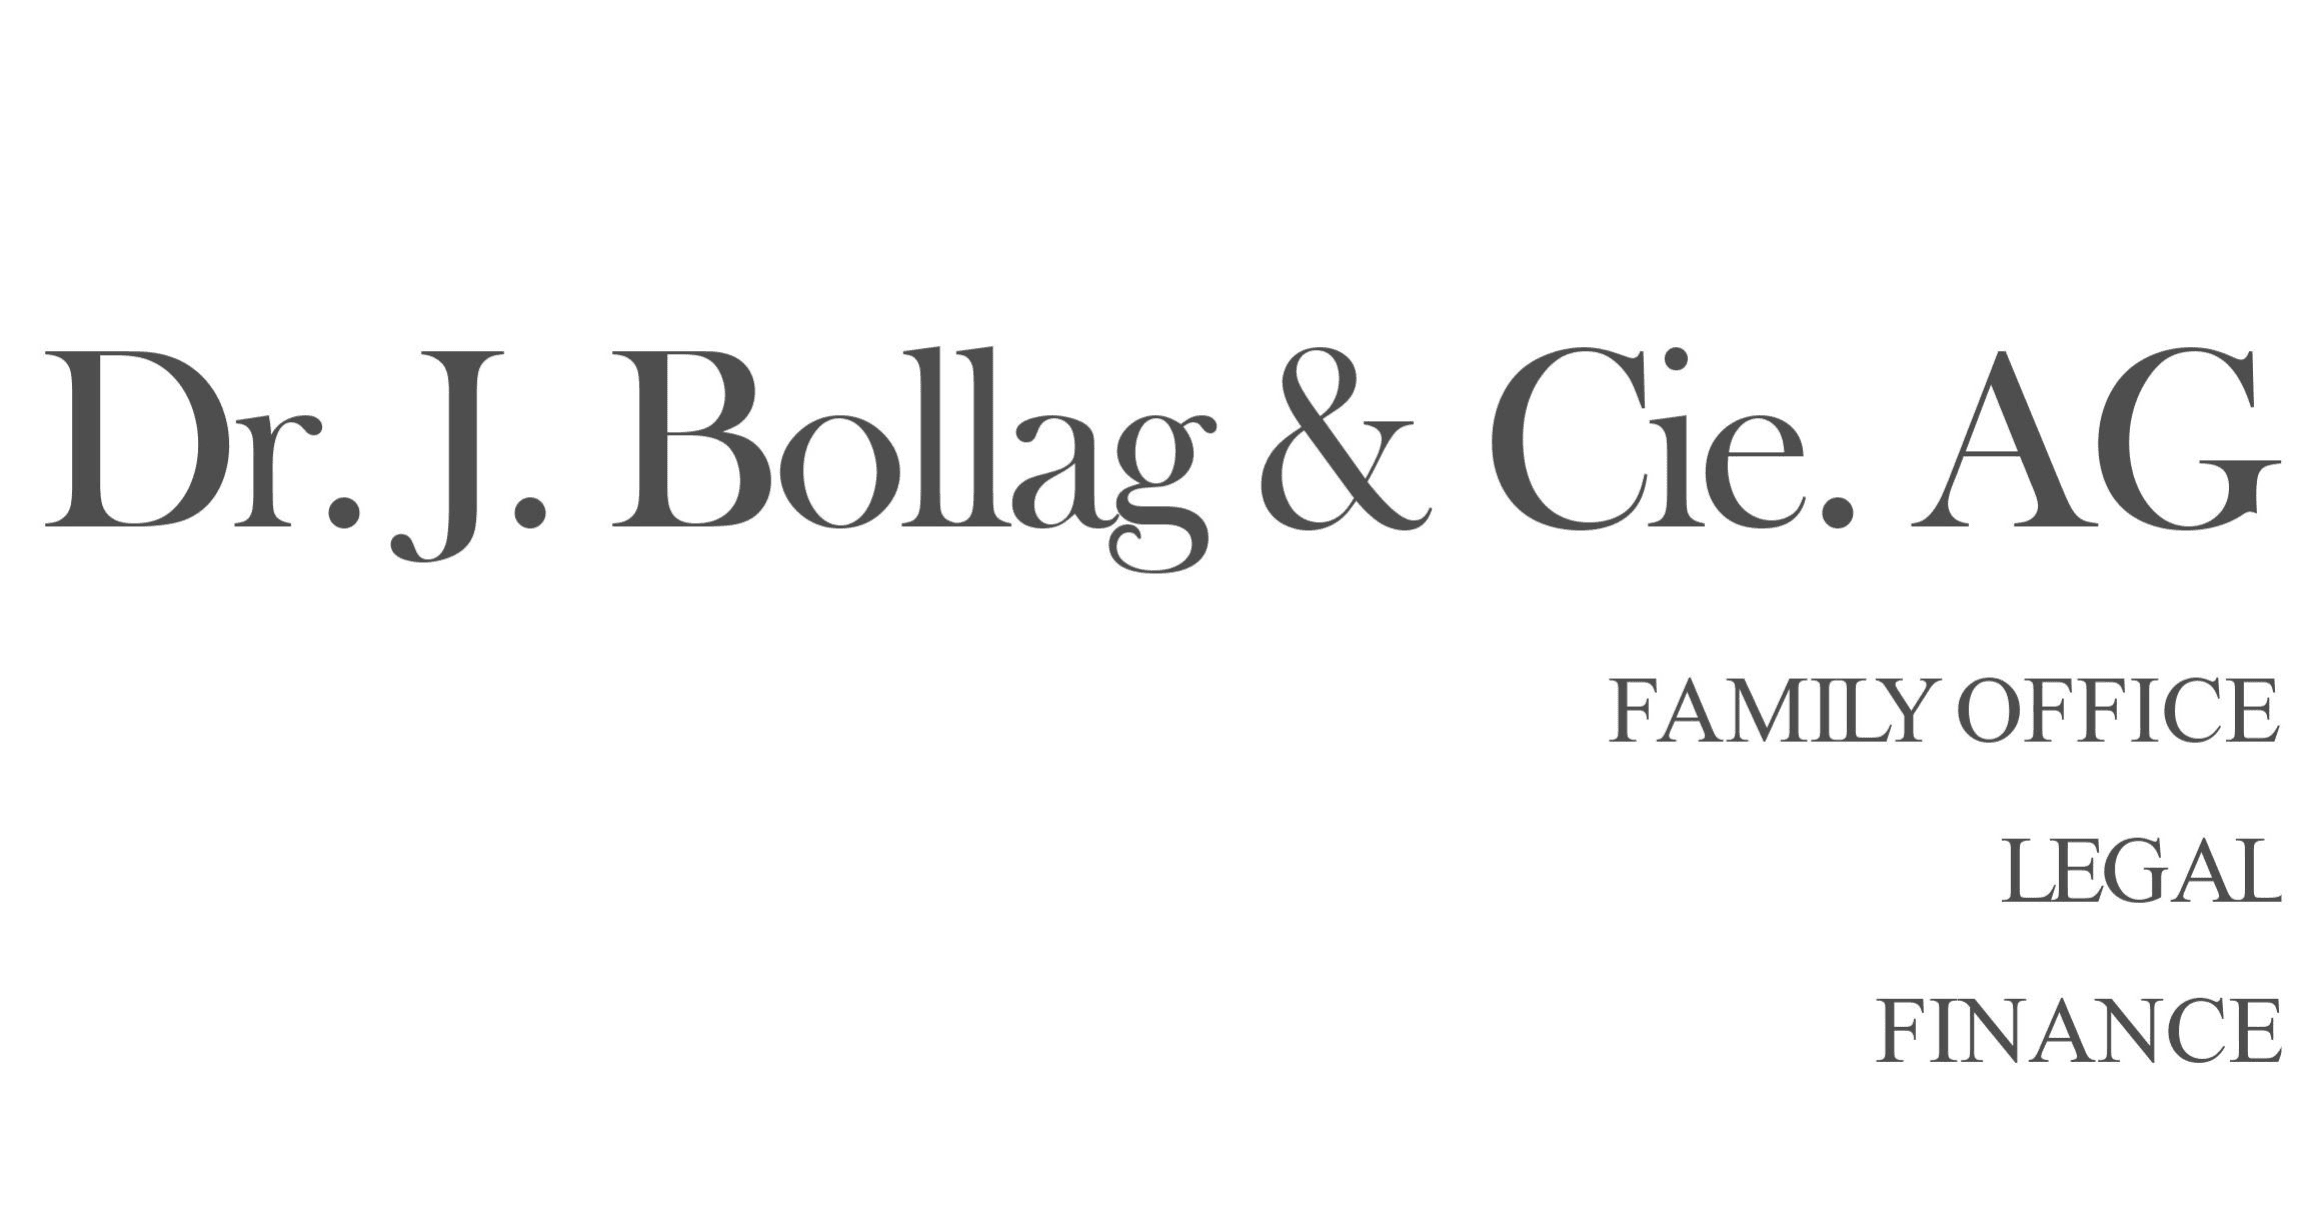 Dr. J. Bollag & Cie. AG